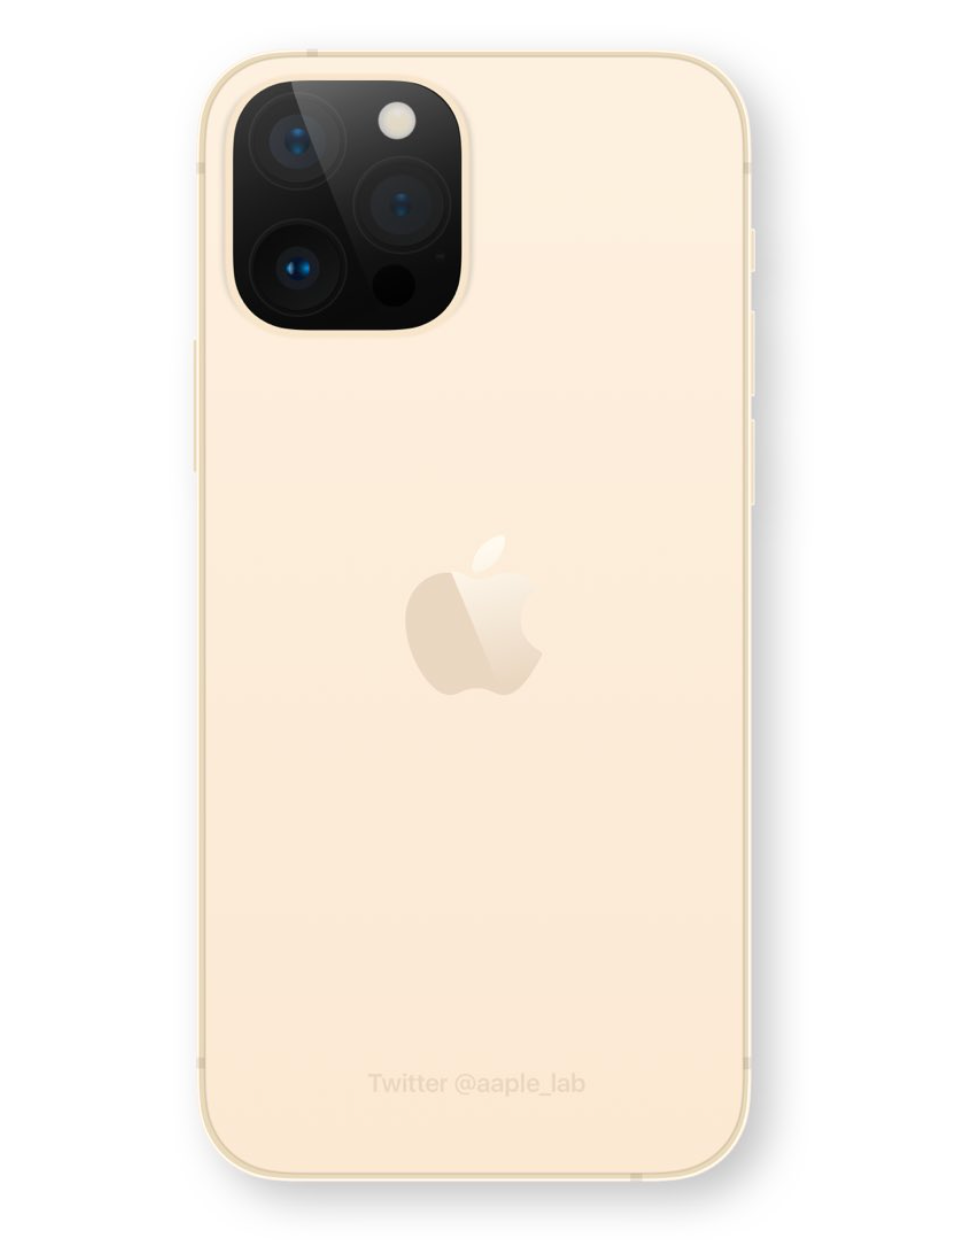 iPhone12s Pro (iPhone13)ゴールド 2021年モデルの外観がリークされる | 携帯情報.コム